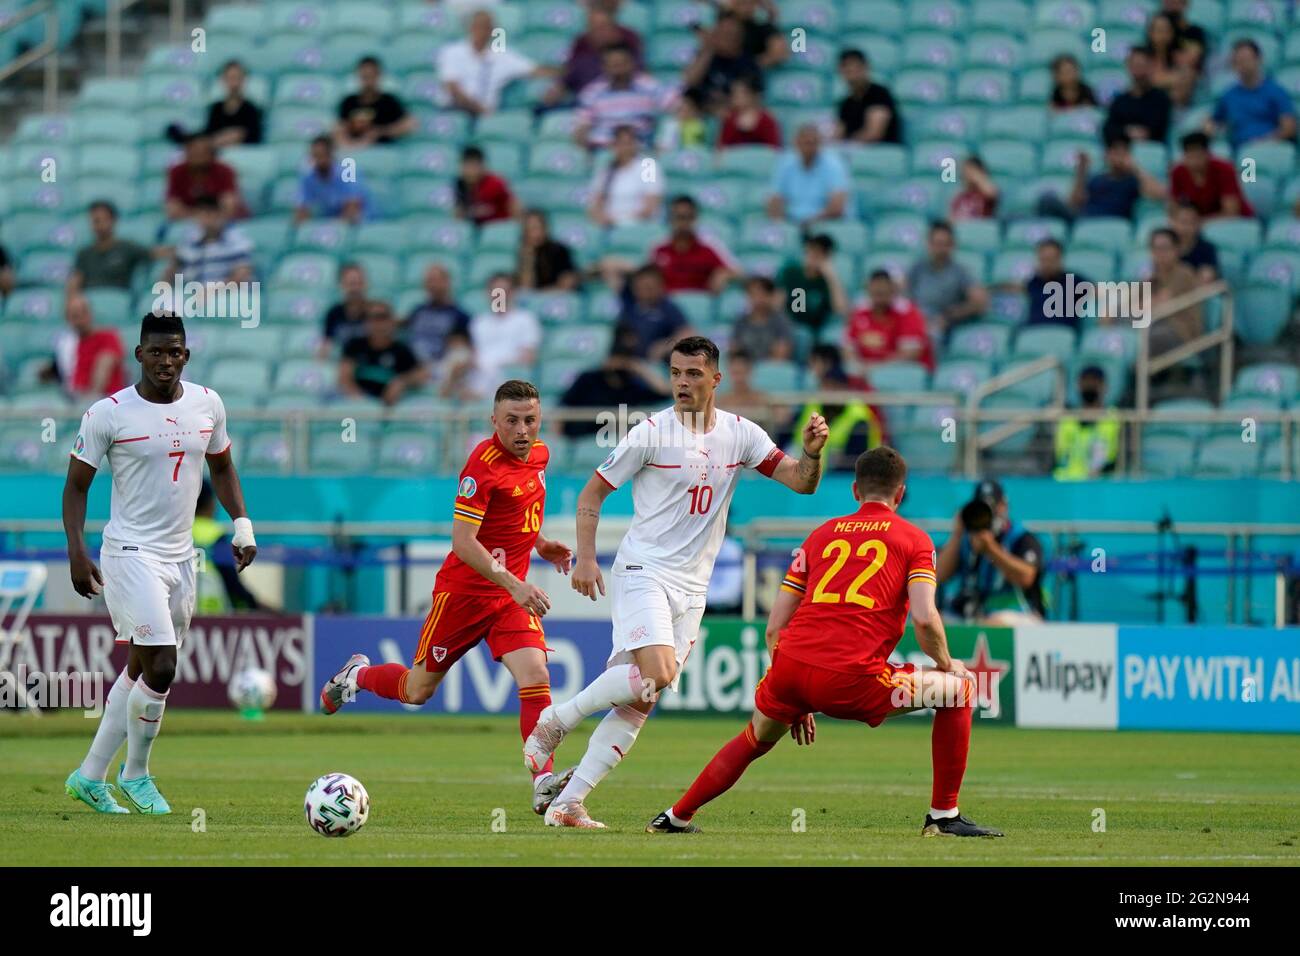 Granit Xhaka Suisse lors du match de l'UEFA Euro 2020 Group A au stade olympique de Bakou, Azerbaïdjan. Date de la photo: Samedi 12 juin 2021. Banque D'Images